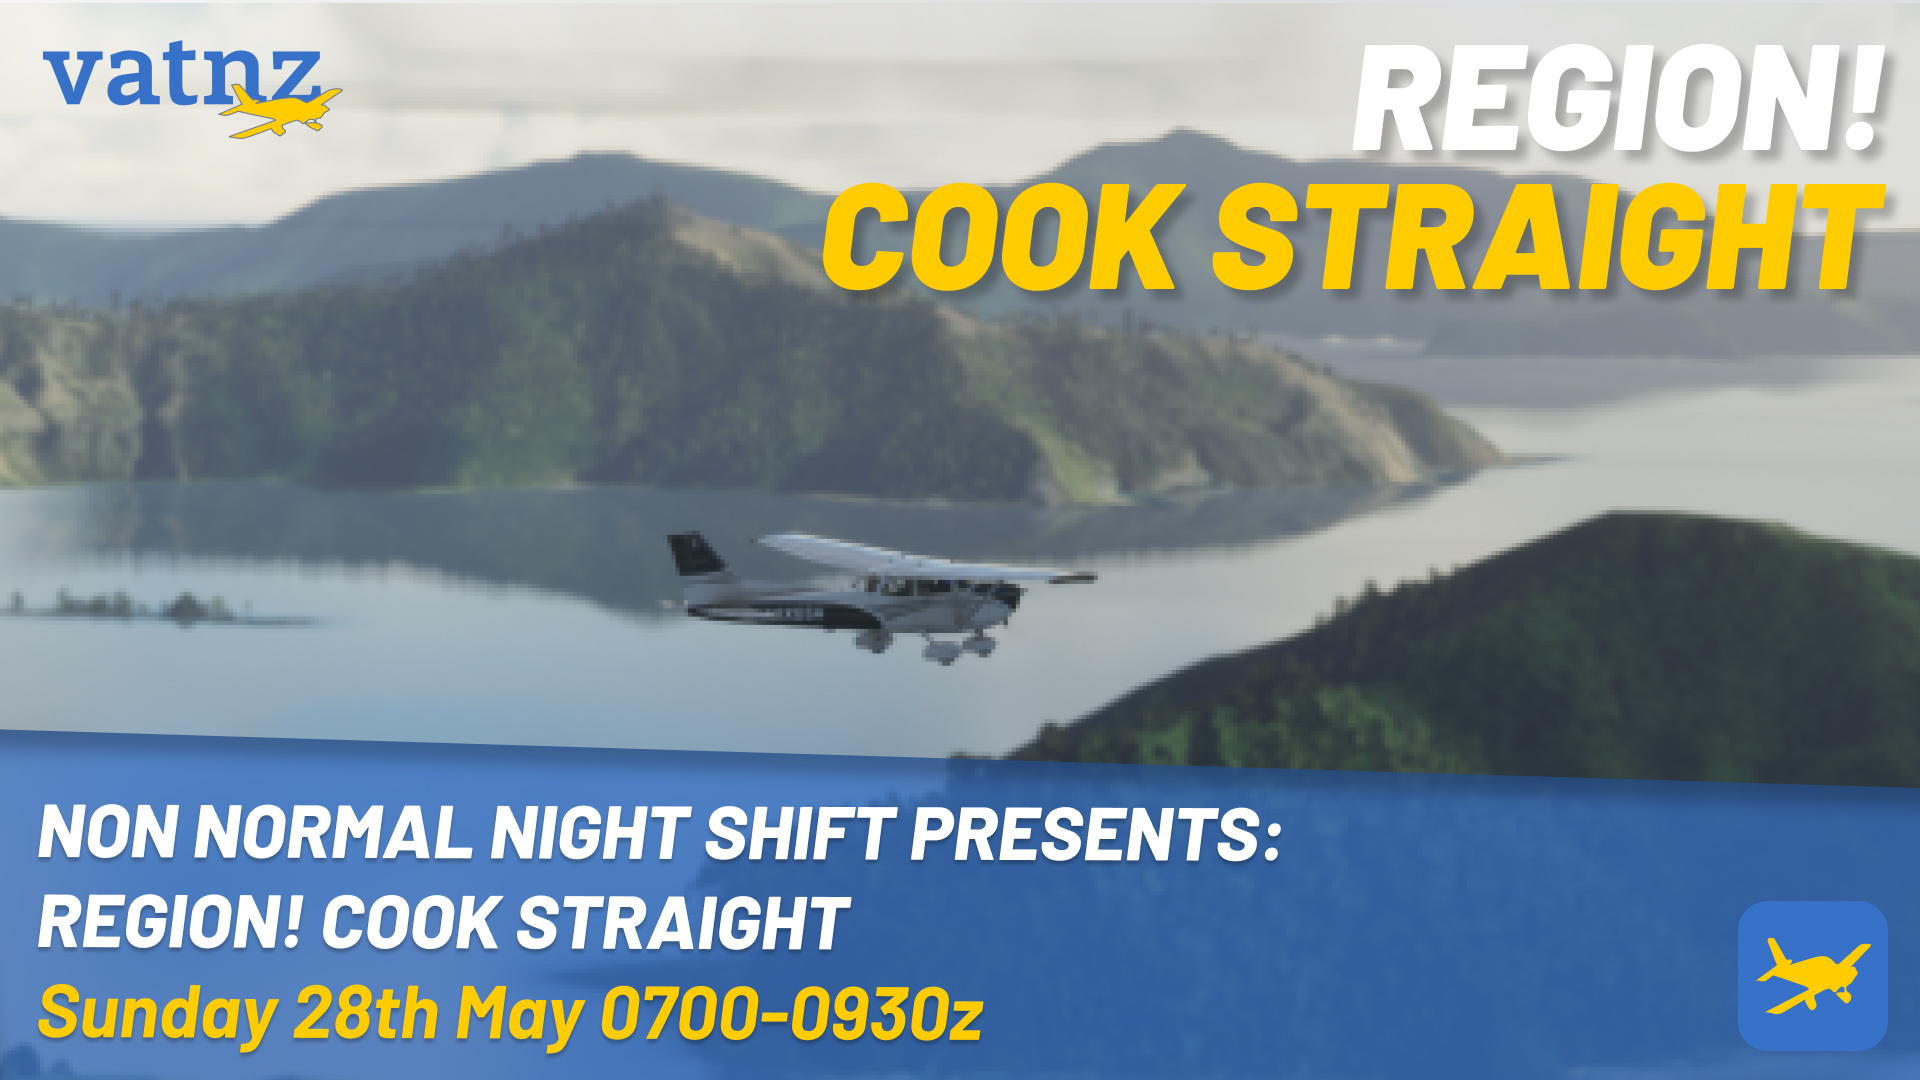 Non Night Shift Presents: Region! Cook Straight